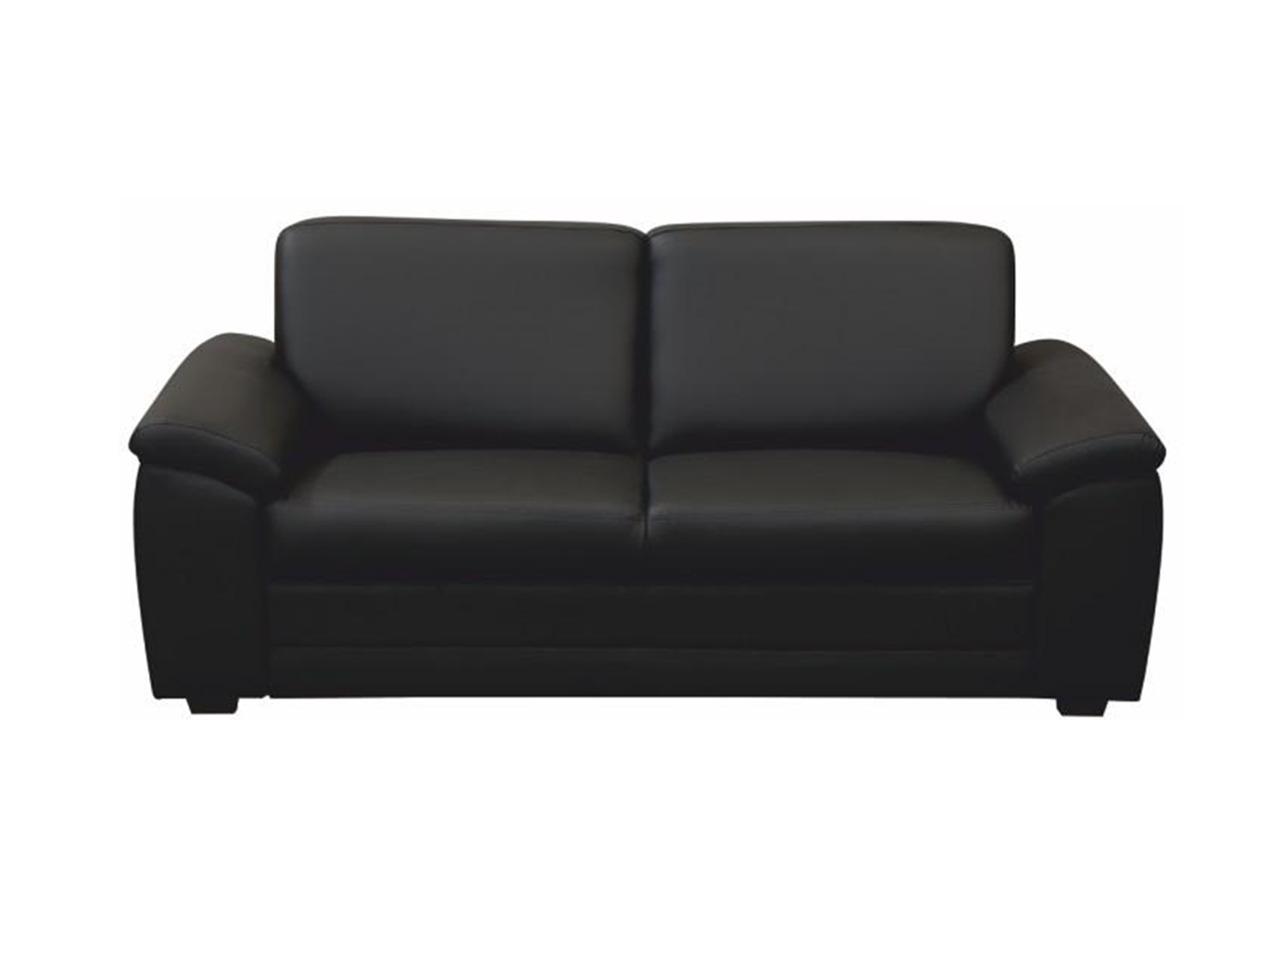 TEM-Biter modern 3 személyes kanapé